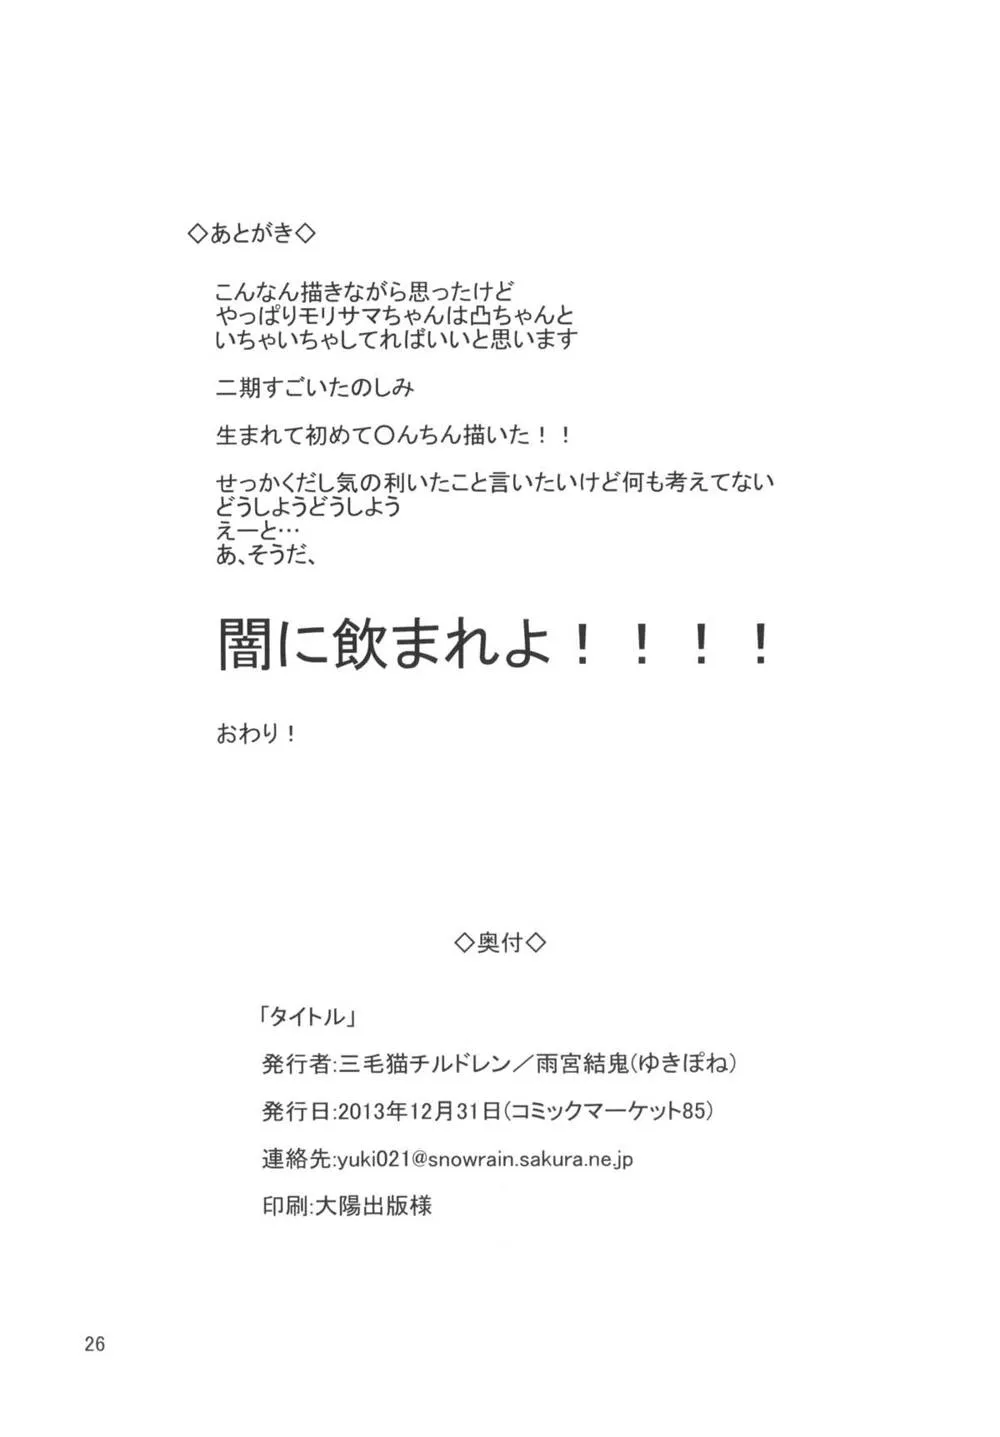 Chuunibyou Demo Koi Ga Shitai,Virgin Summer Rain + Paper [Japanese][第26页]